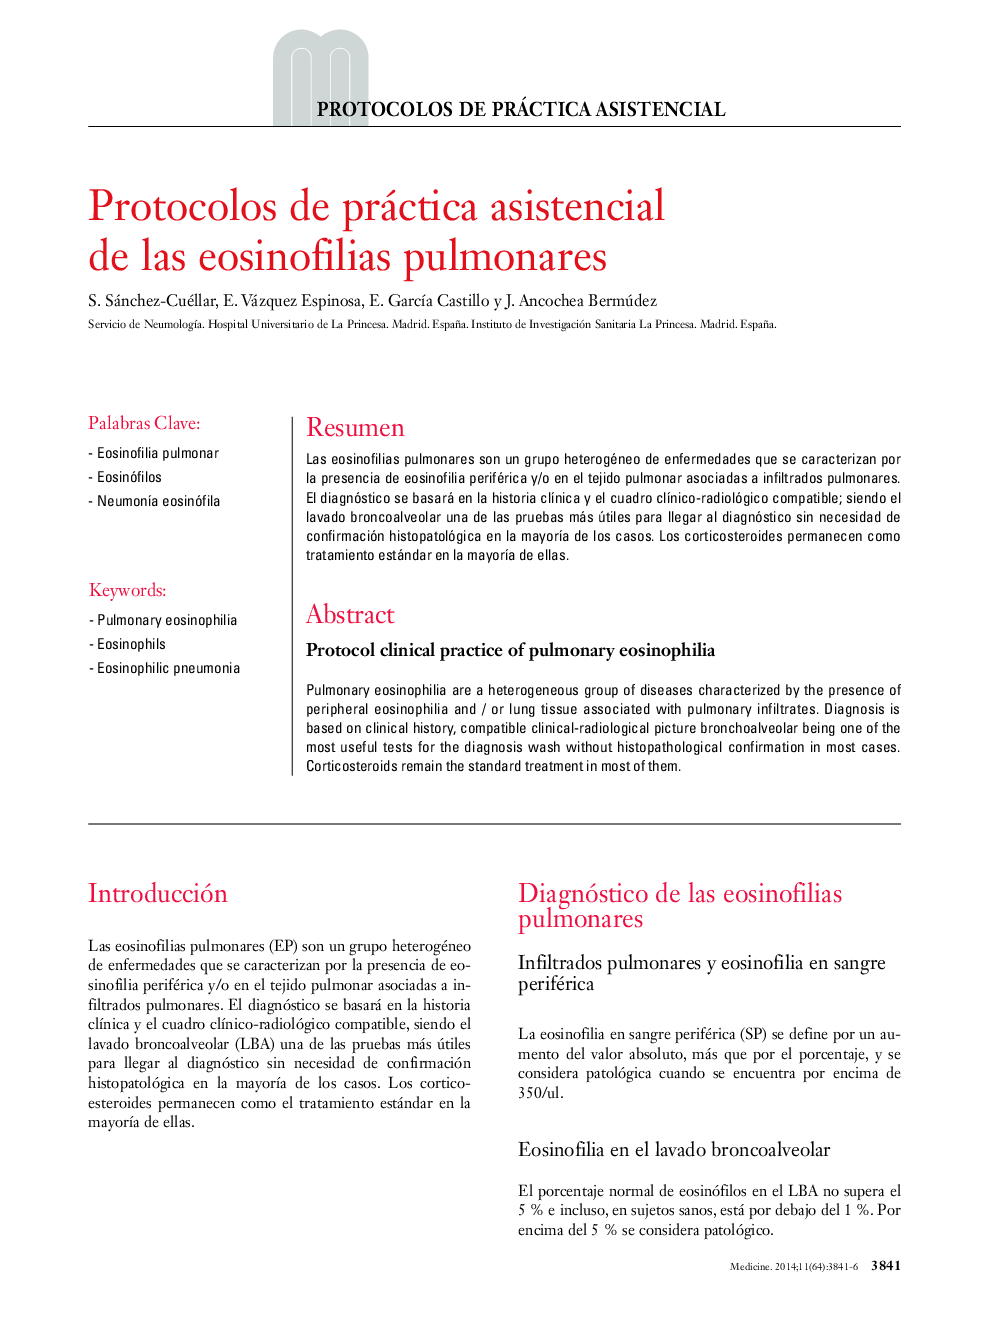 Protocolos de práctica asistencial de las eosinofilias pulmonares